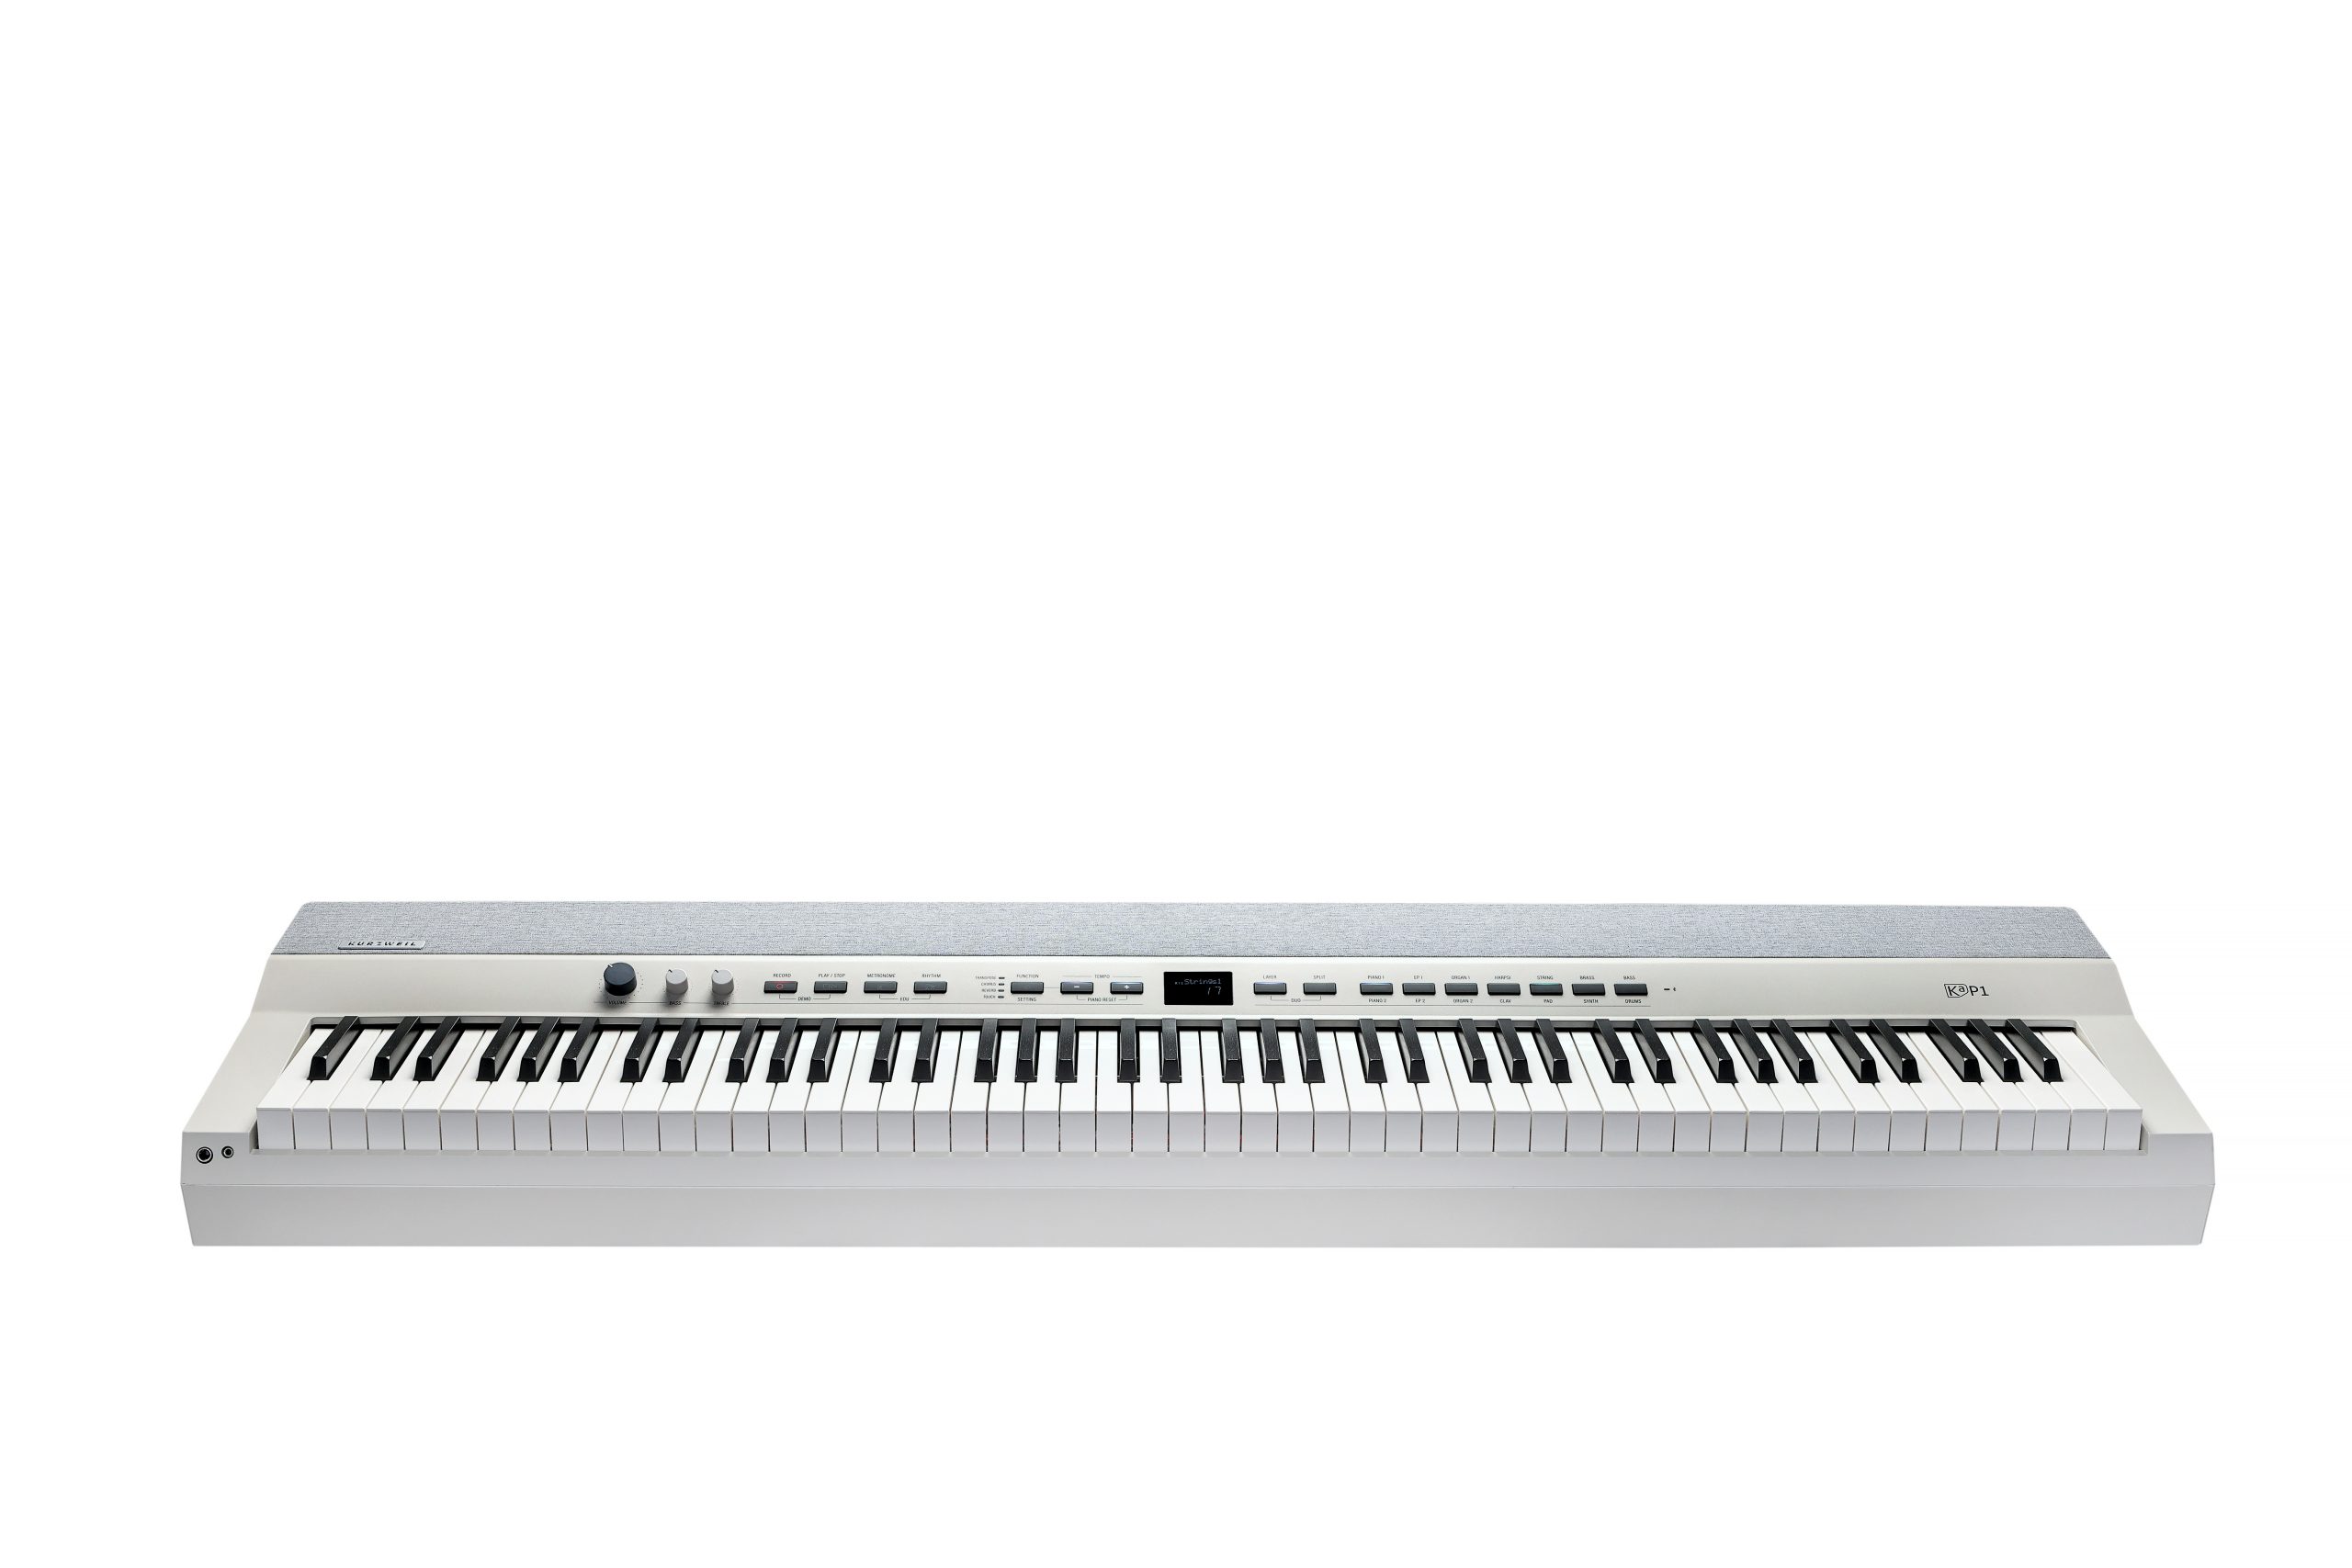 Цифровые пианино Kurzweil KA P1 WH 88 клавишное клавишное пианино портативное цифровое пианино с жк дисплеем